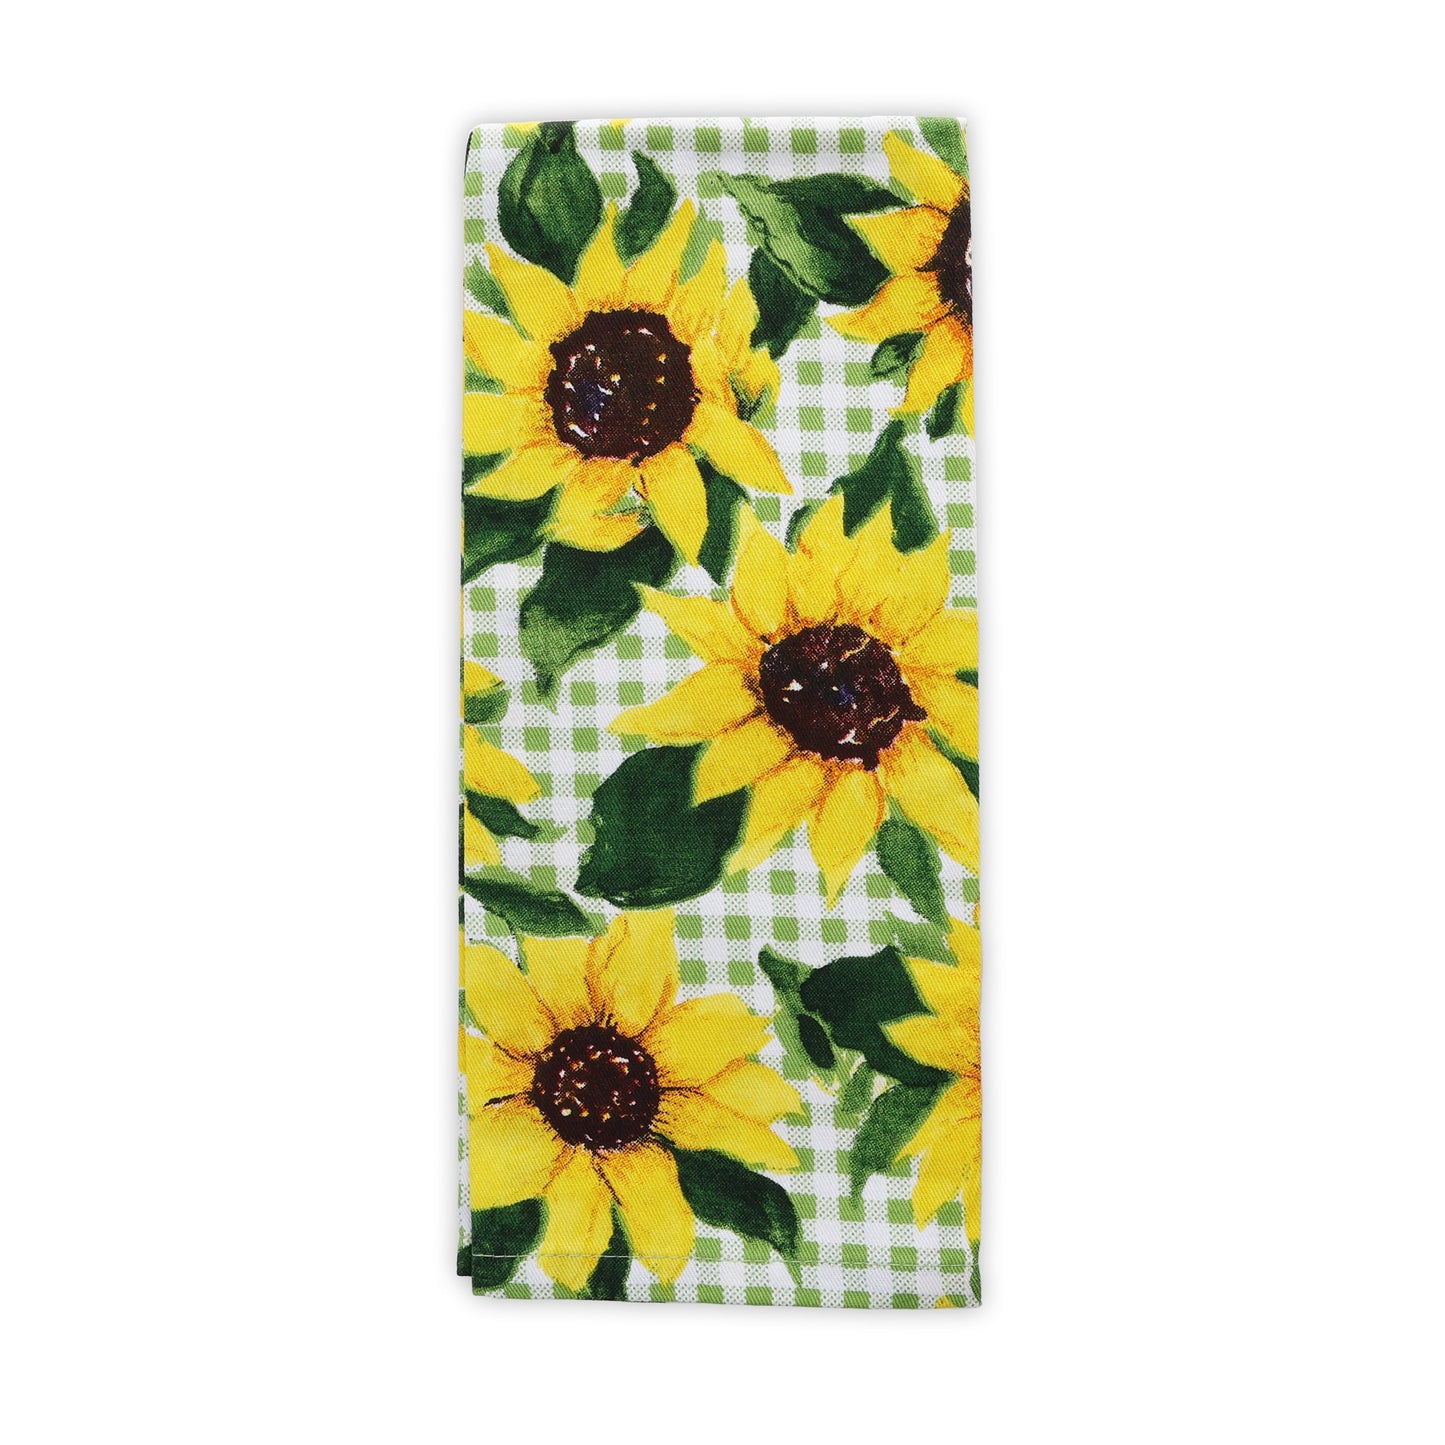 15X25in 100% Cotton Premium Kitchen Towel - Sunflowers